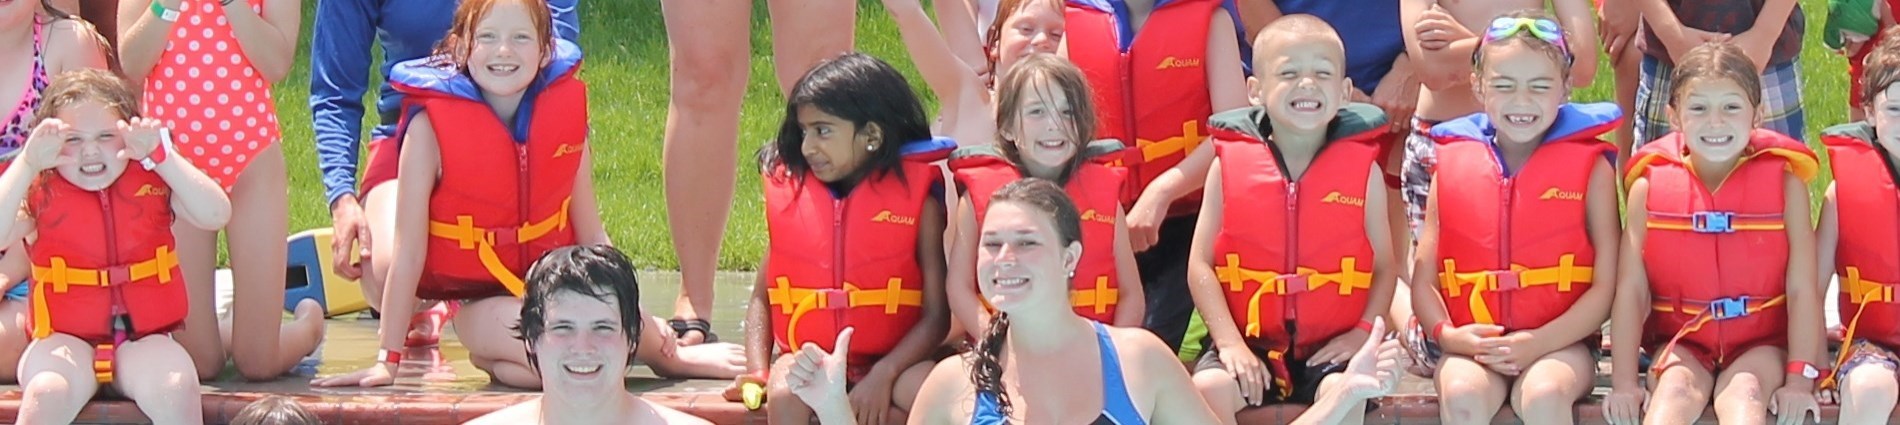 kids in lifejackets in pool